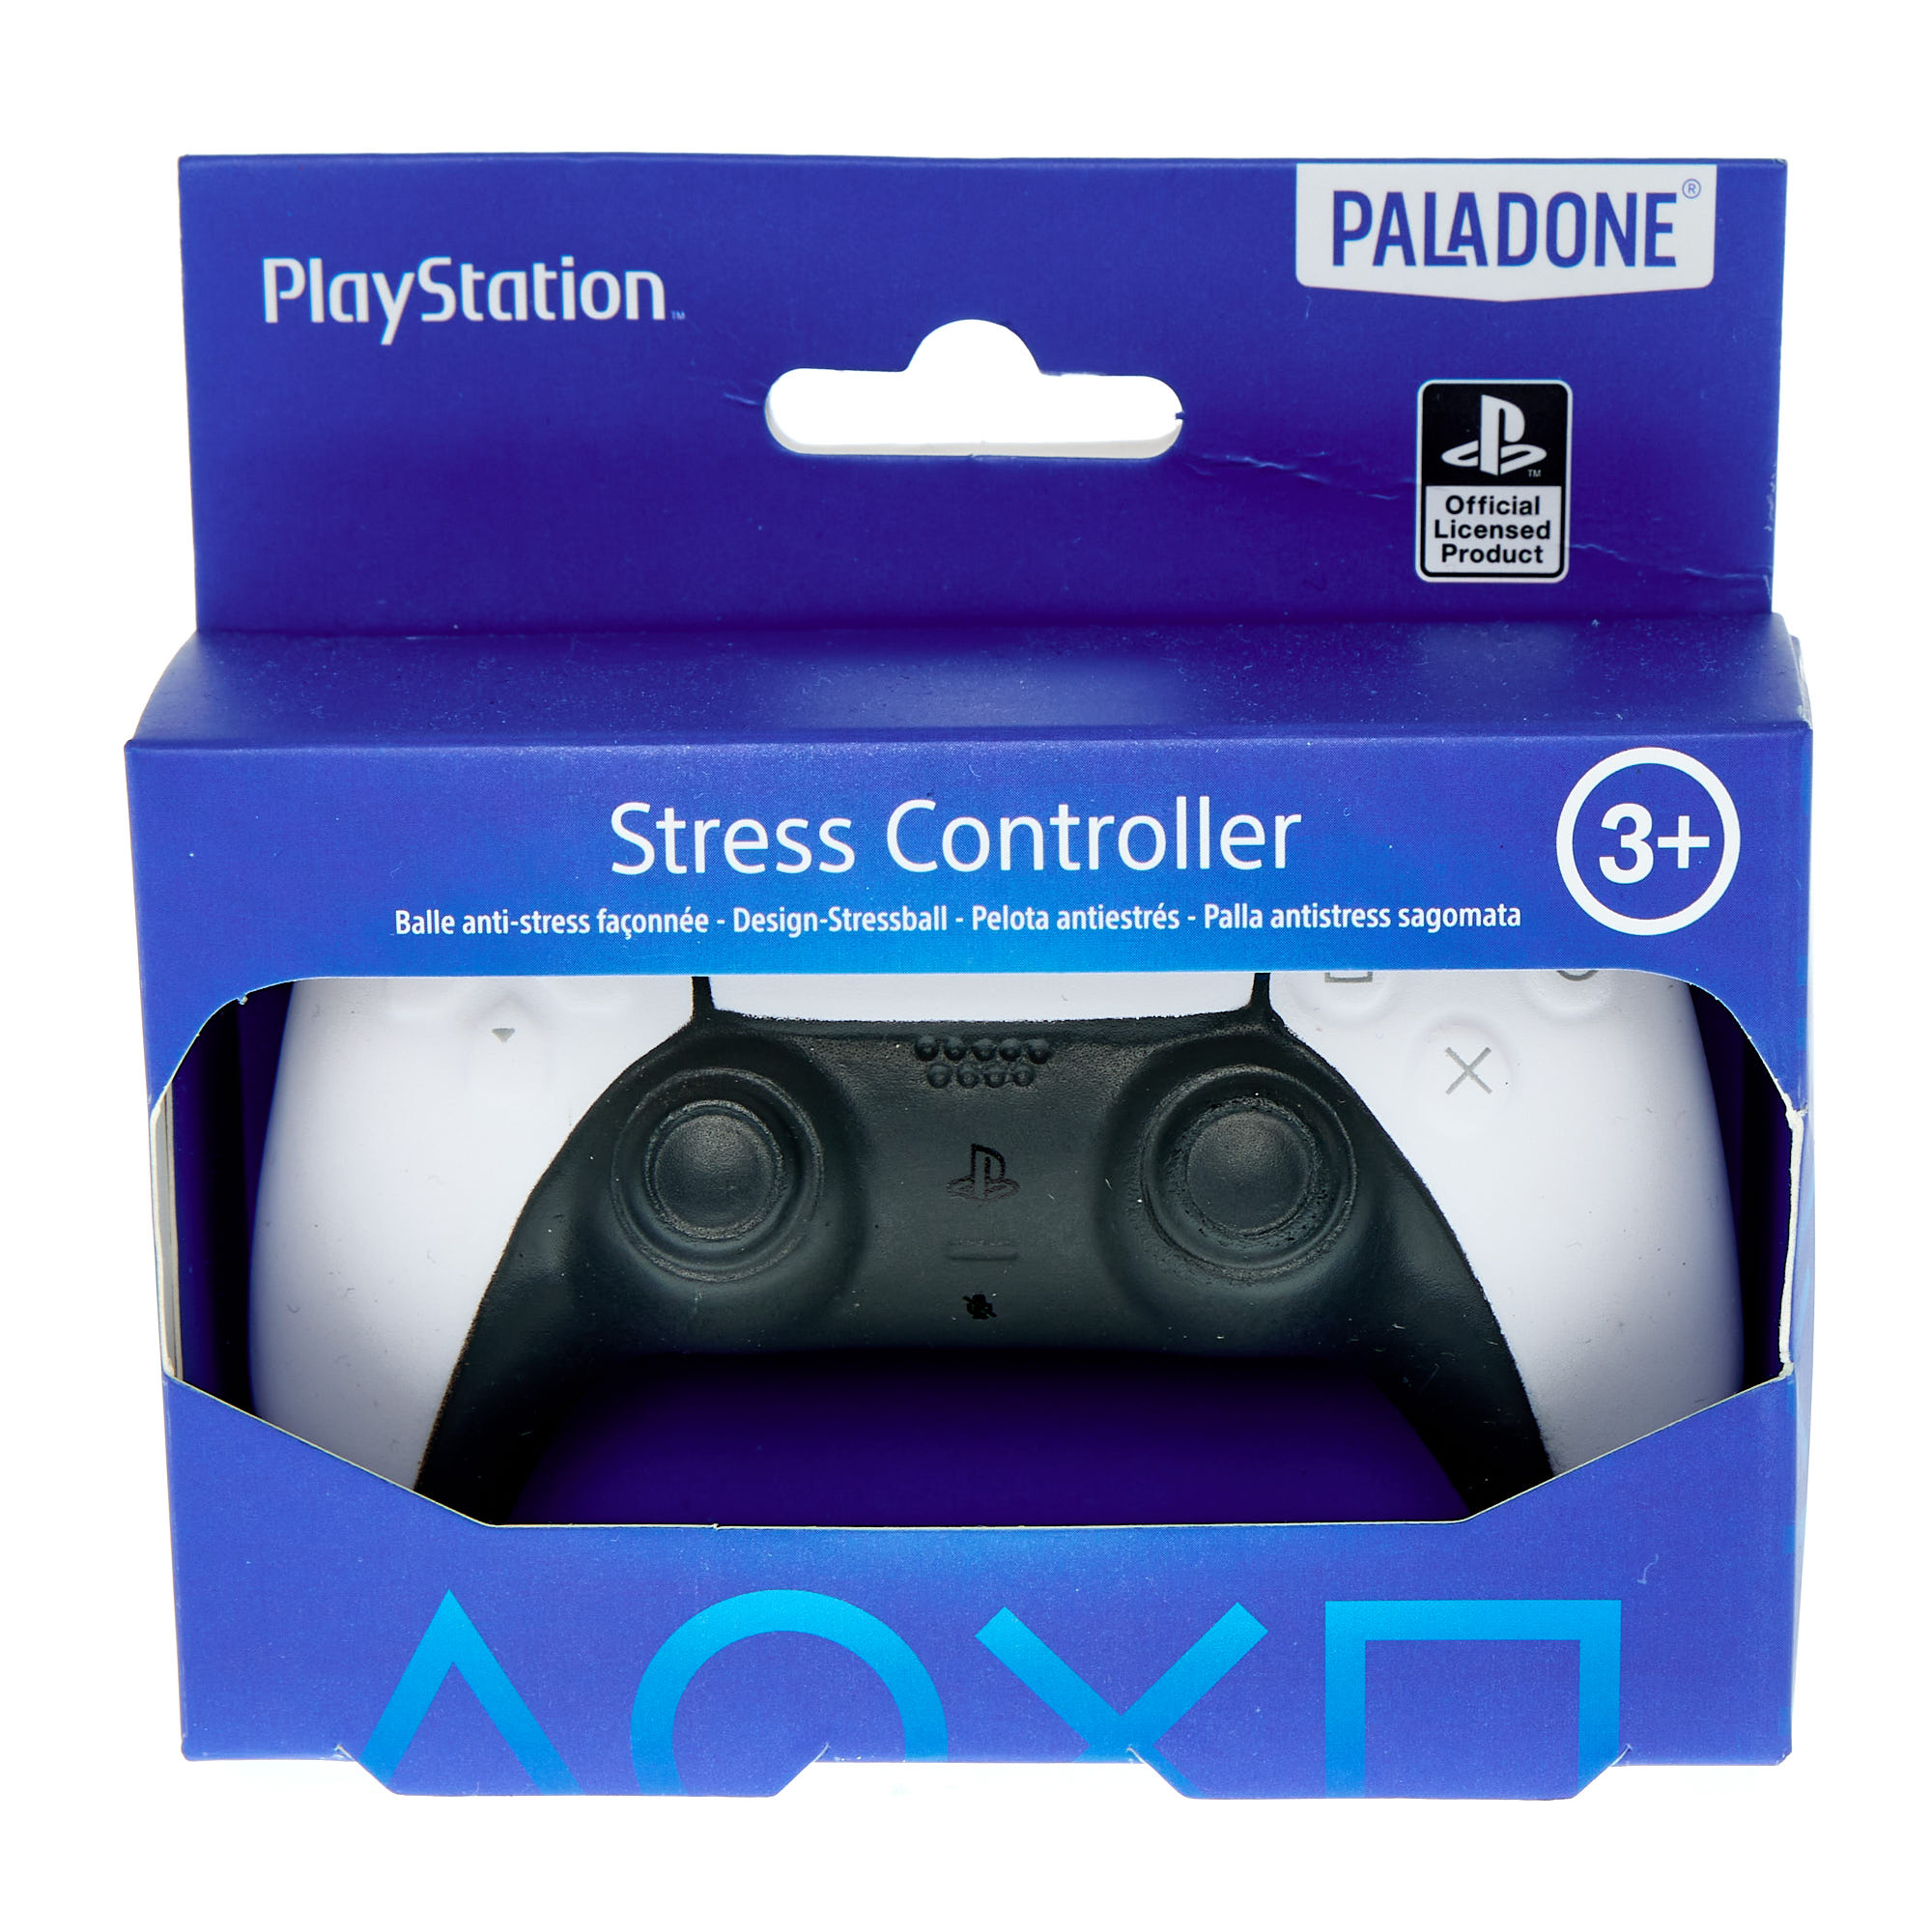 PlaySation Stress Controller